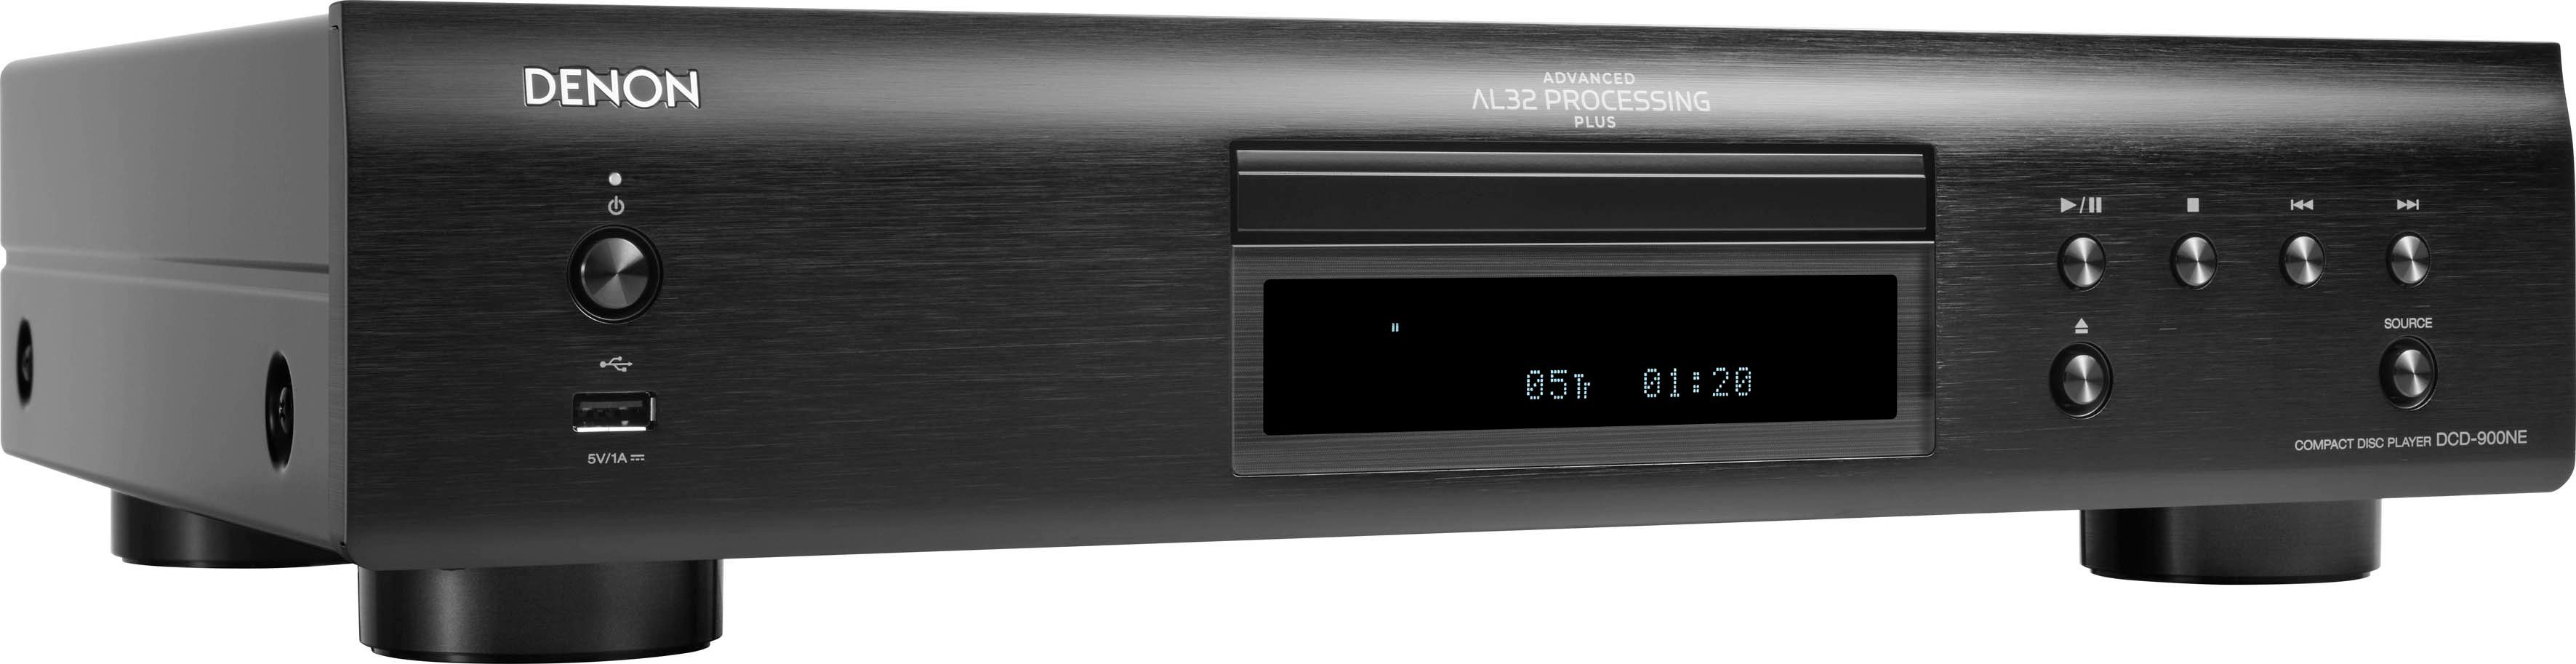 Denon DCD-900NE (USB-Audiowiedergabe) CD-Player schwarz